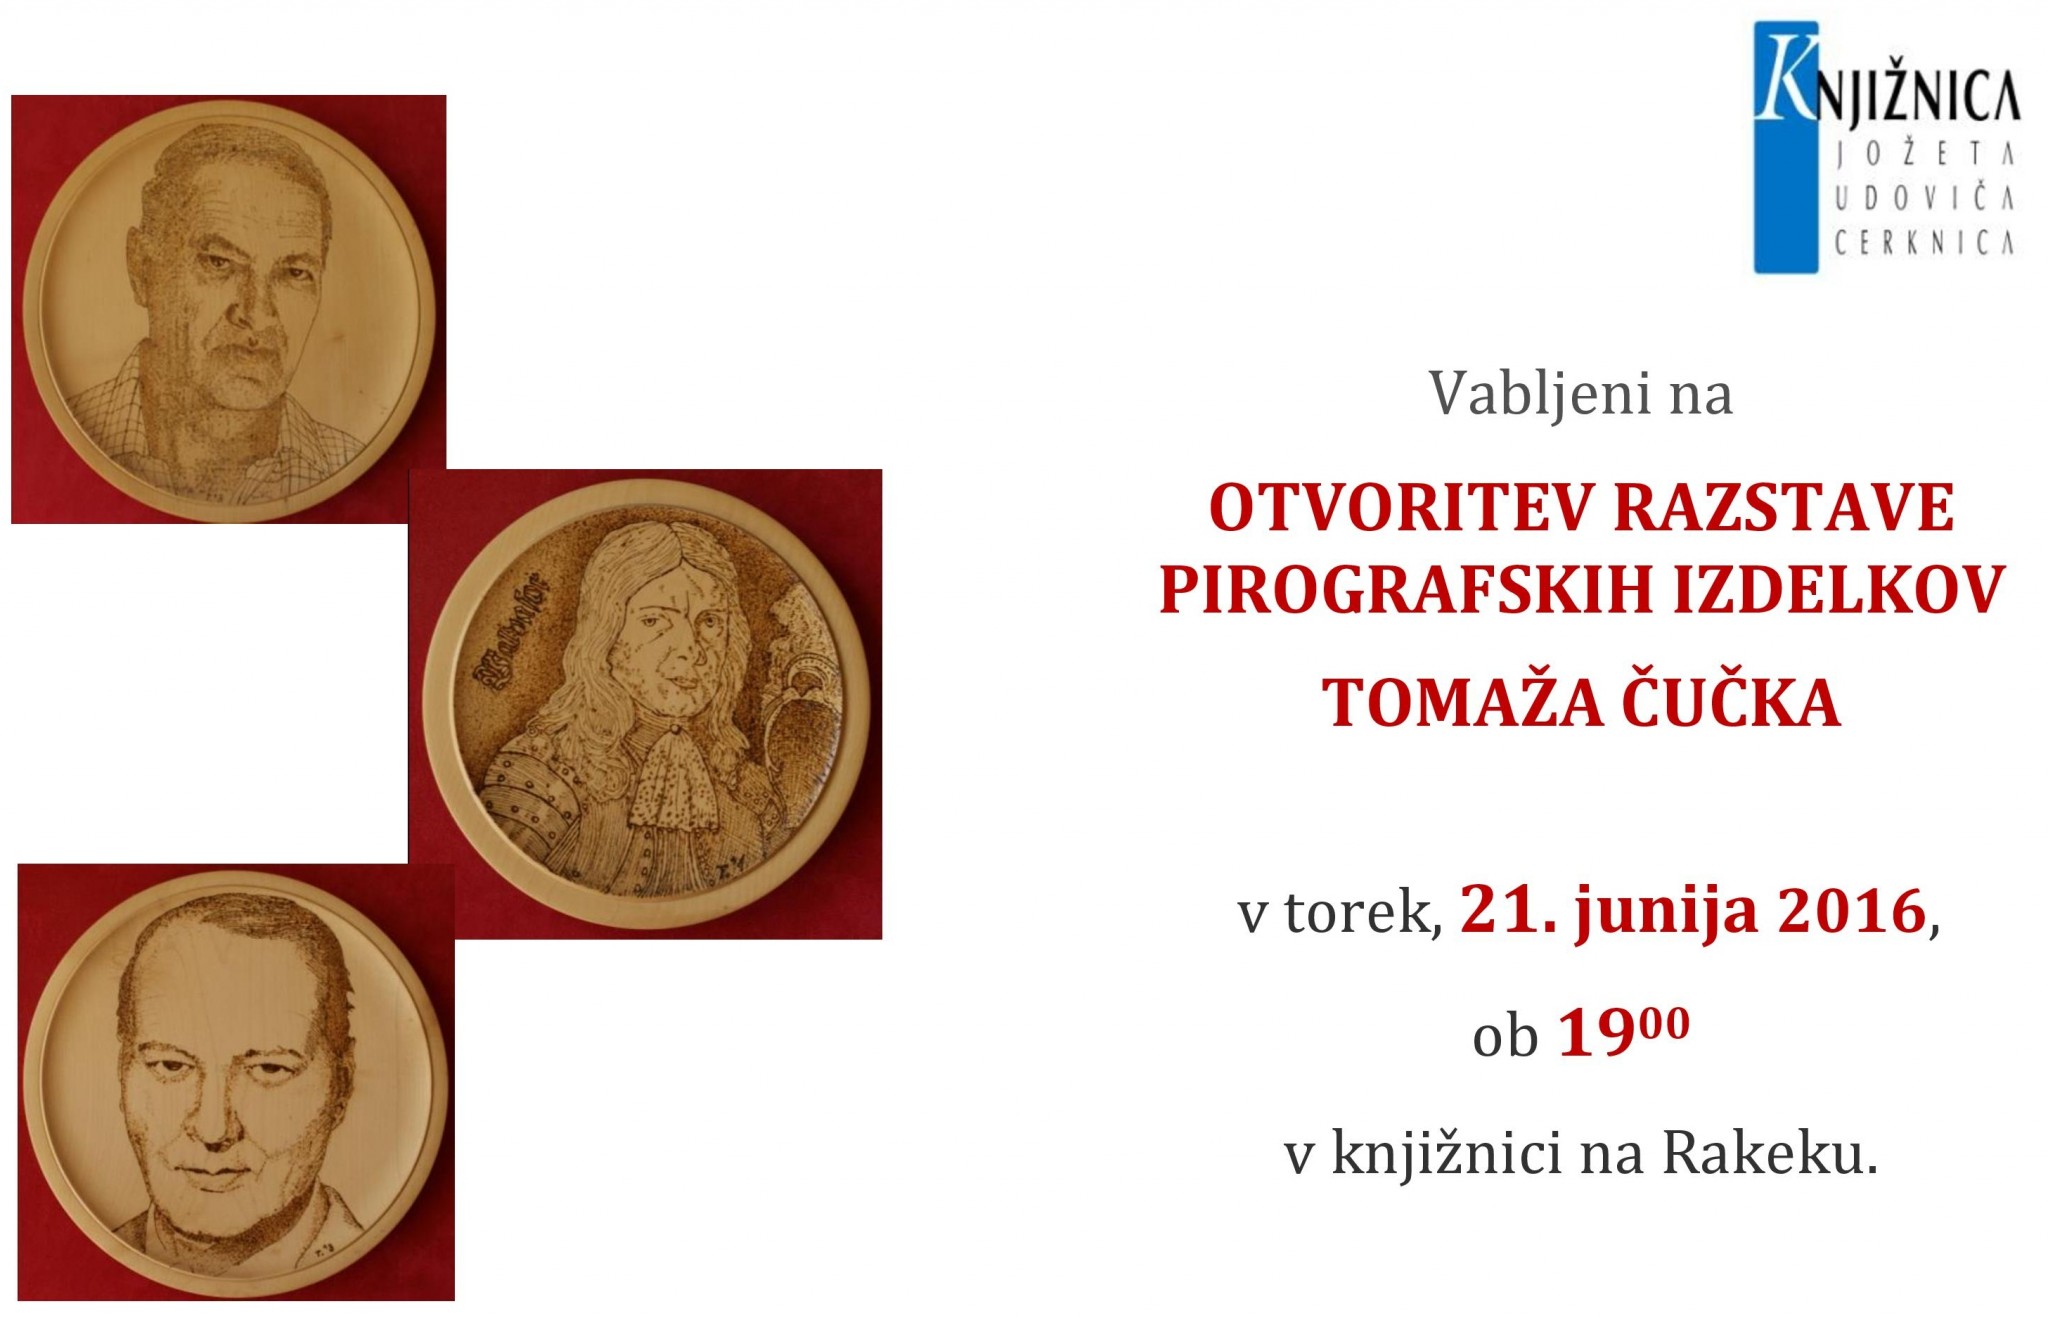 cover 3 - Otvoritev razstave pirografskih izdelkov Tomaža Čučka